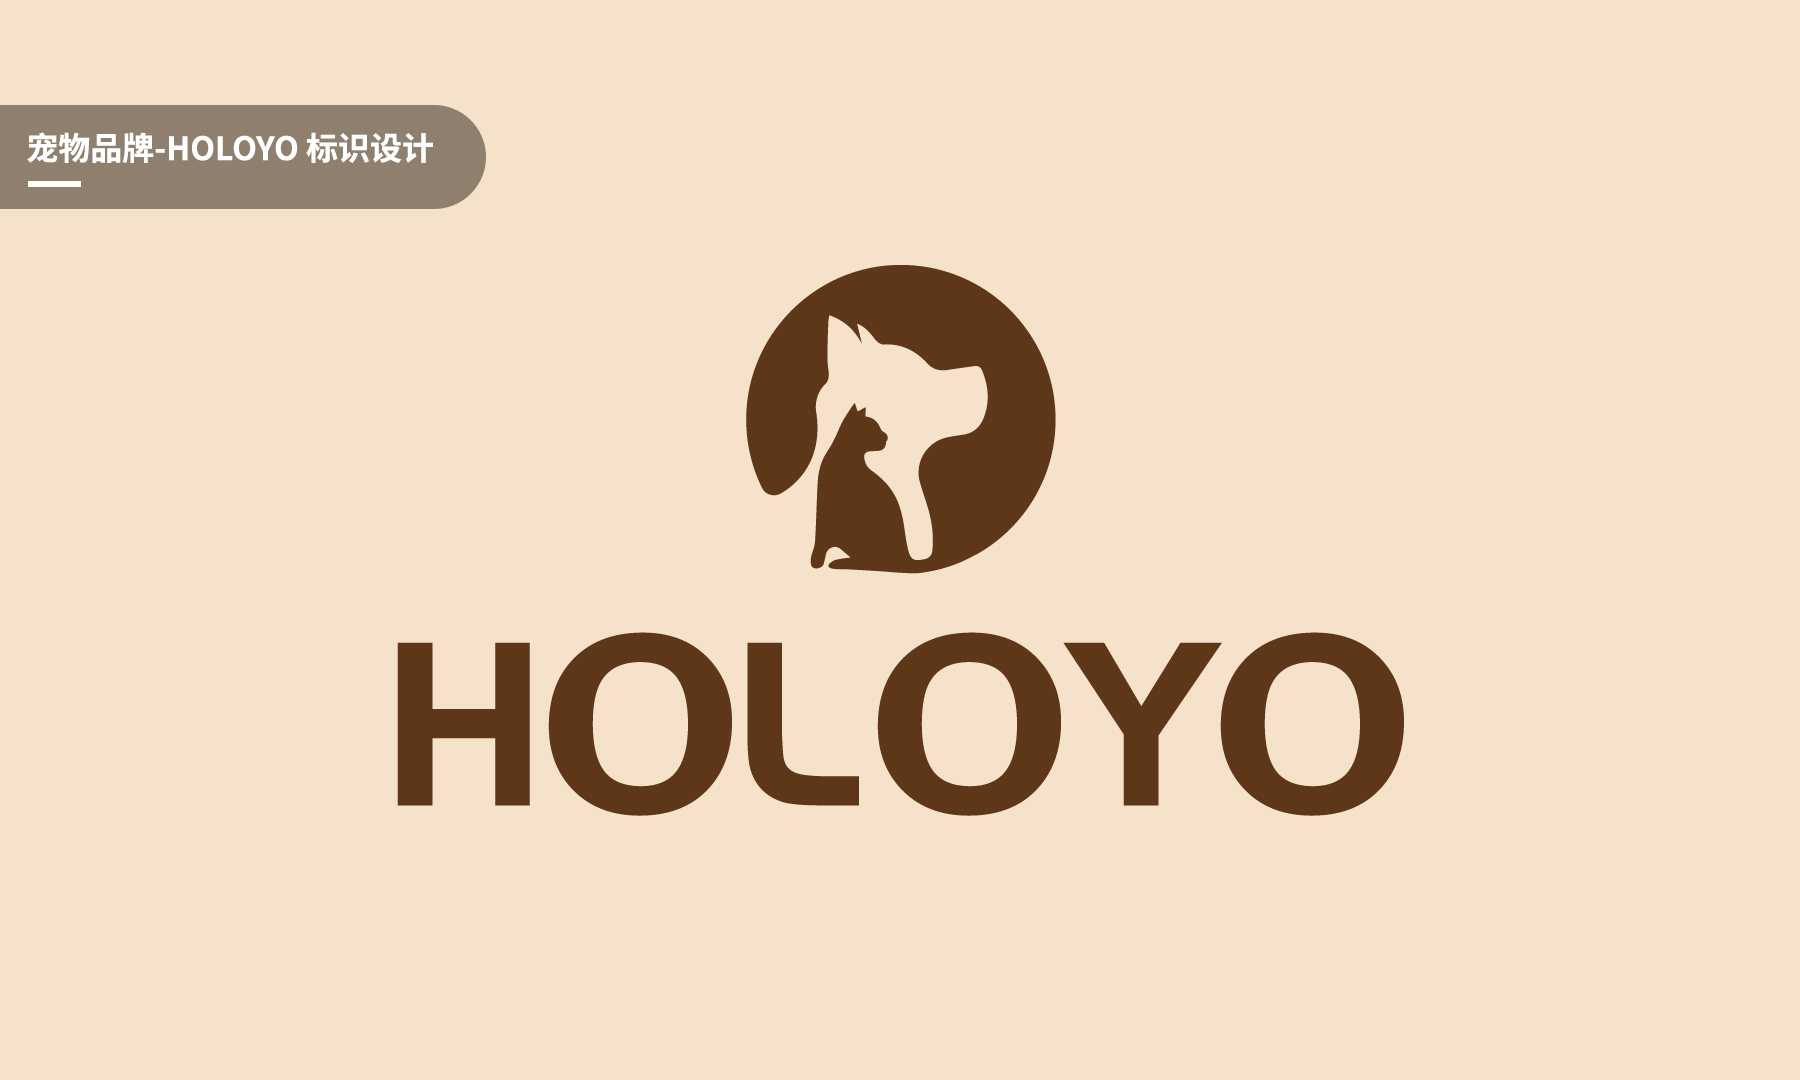 宠物品牌holoyologo设计